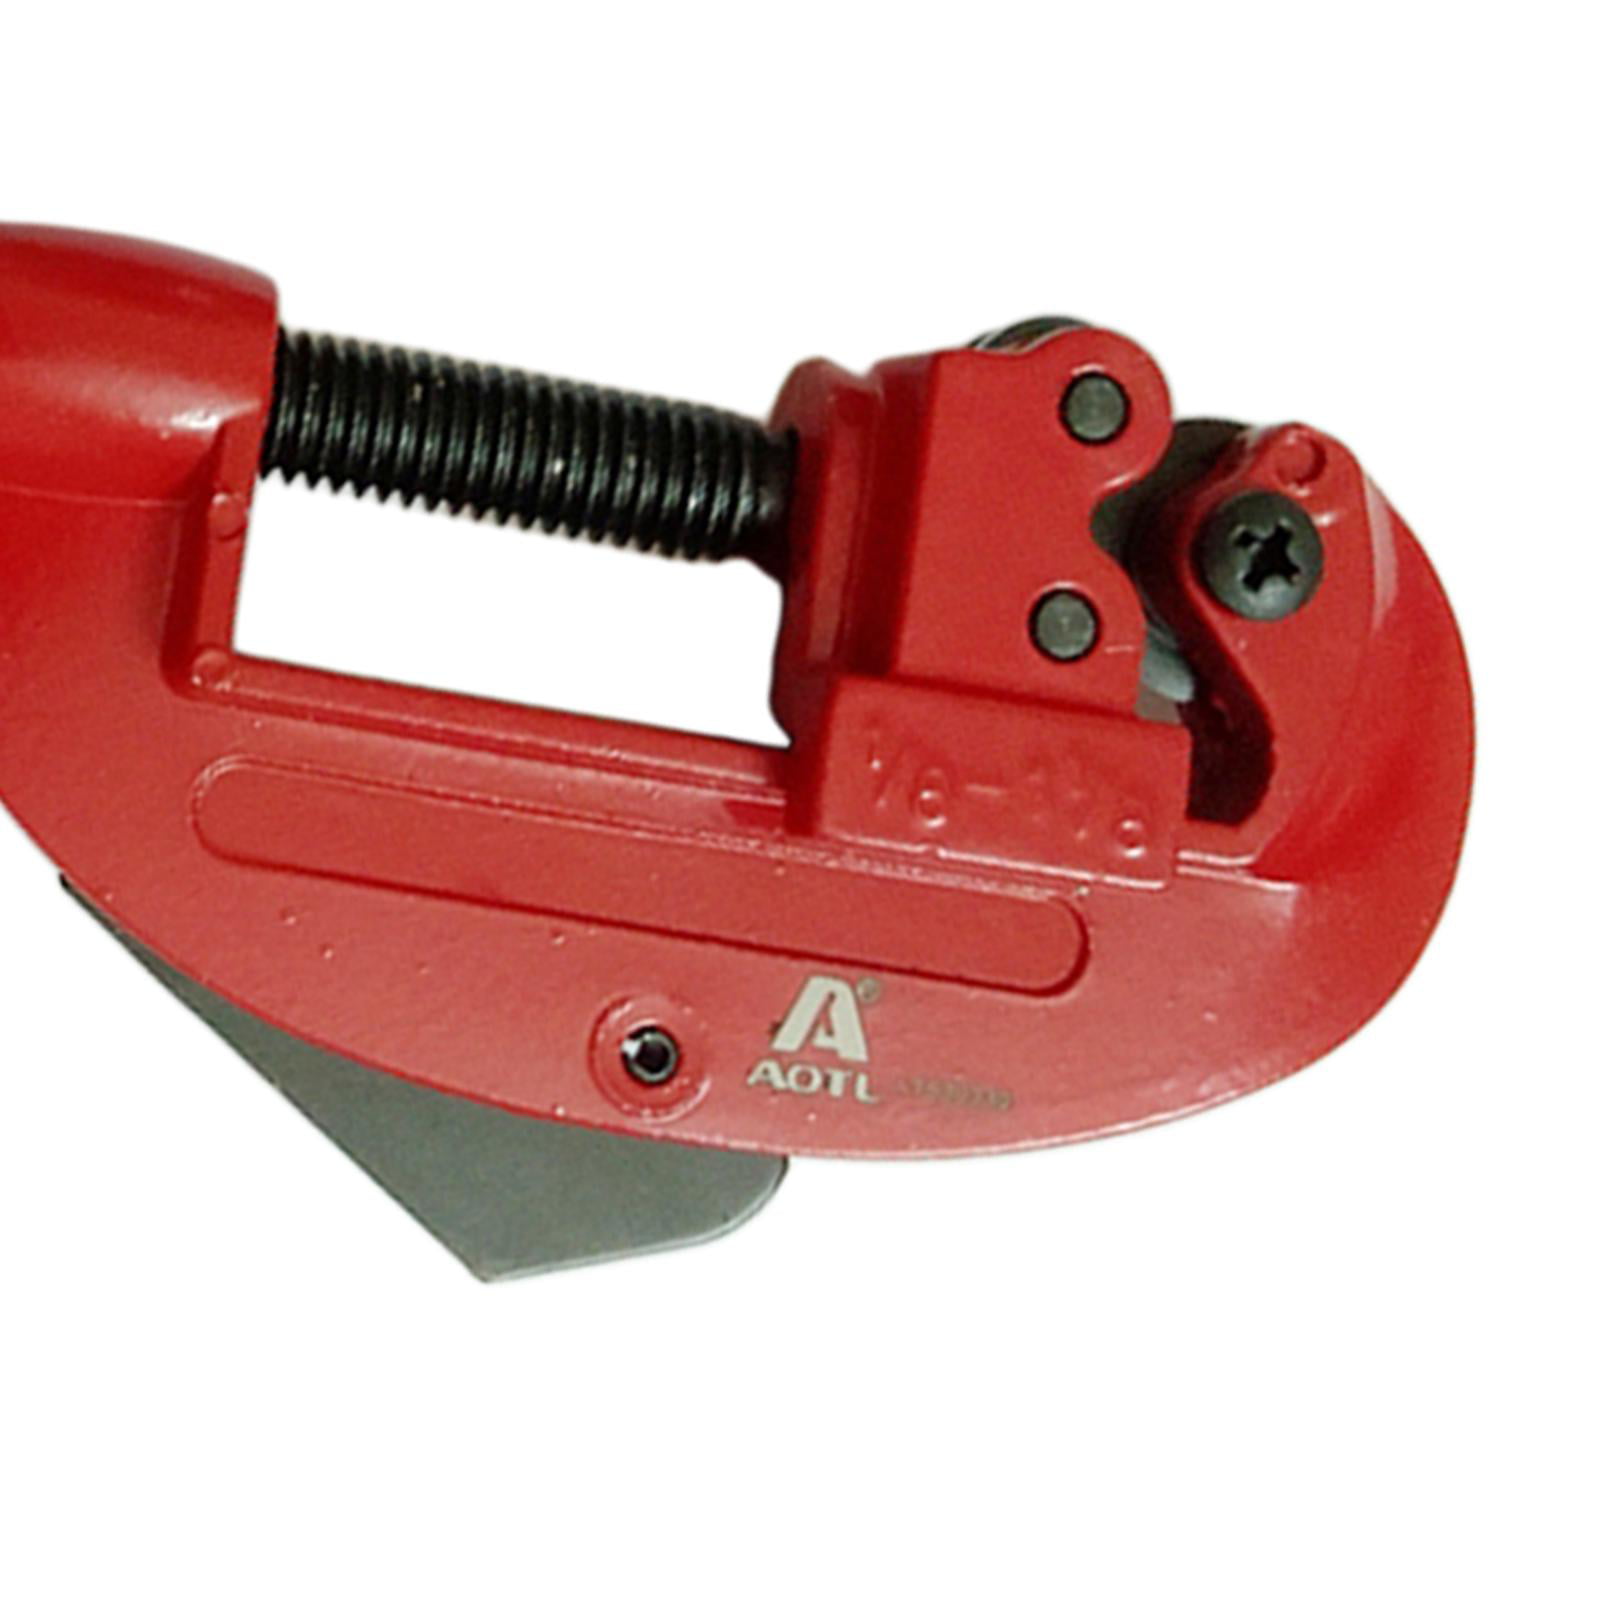 1/8" BRAKE COPPER PIPE MINI TUBE CUTTER SLICER RED 1-1/8" 3mm -28mm 